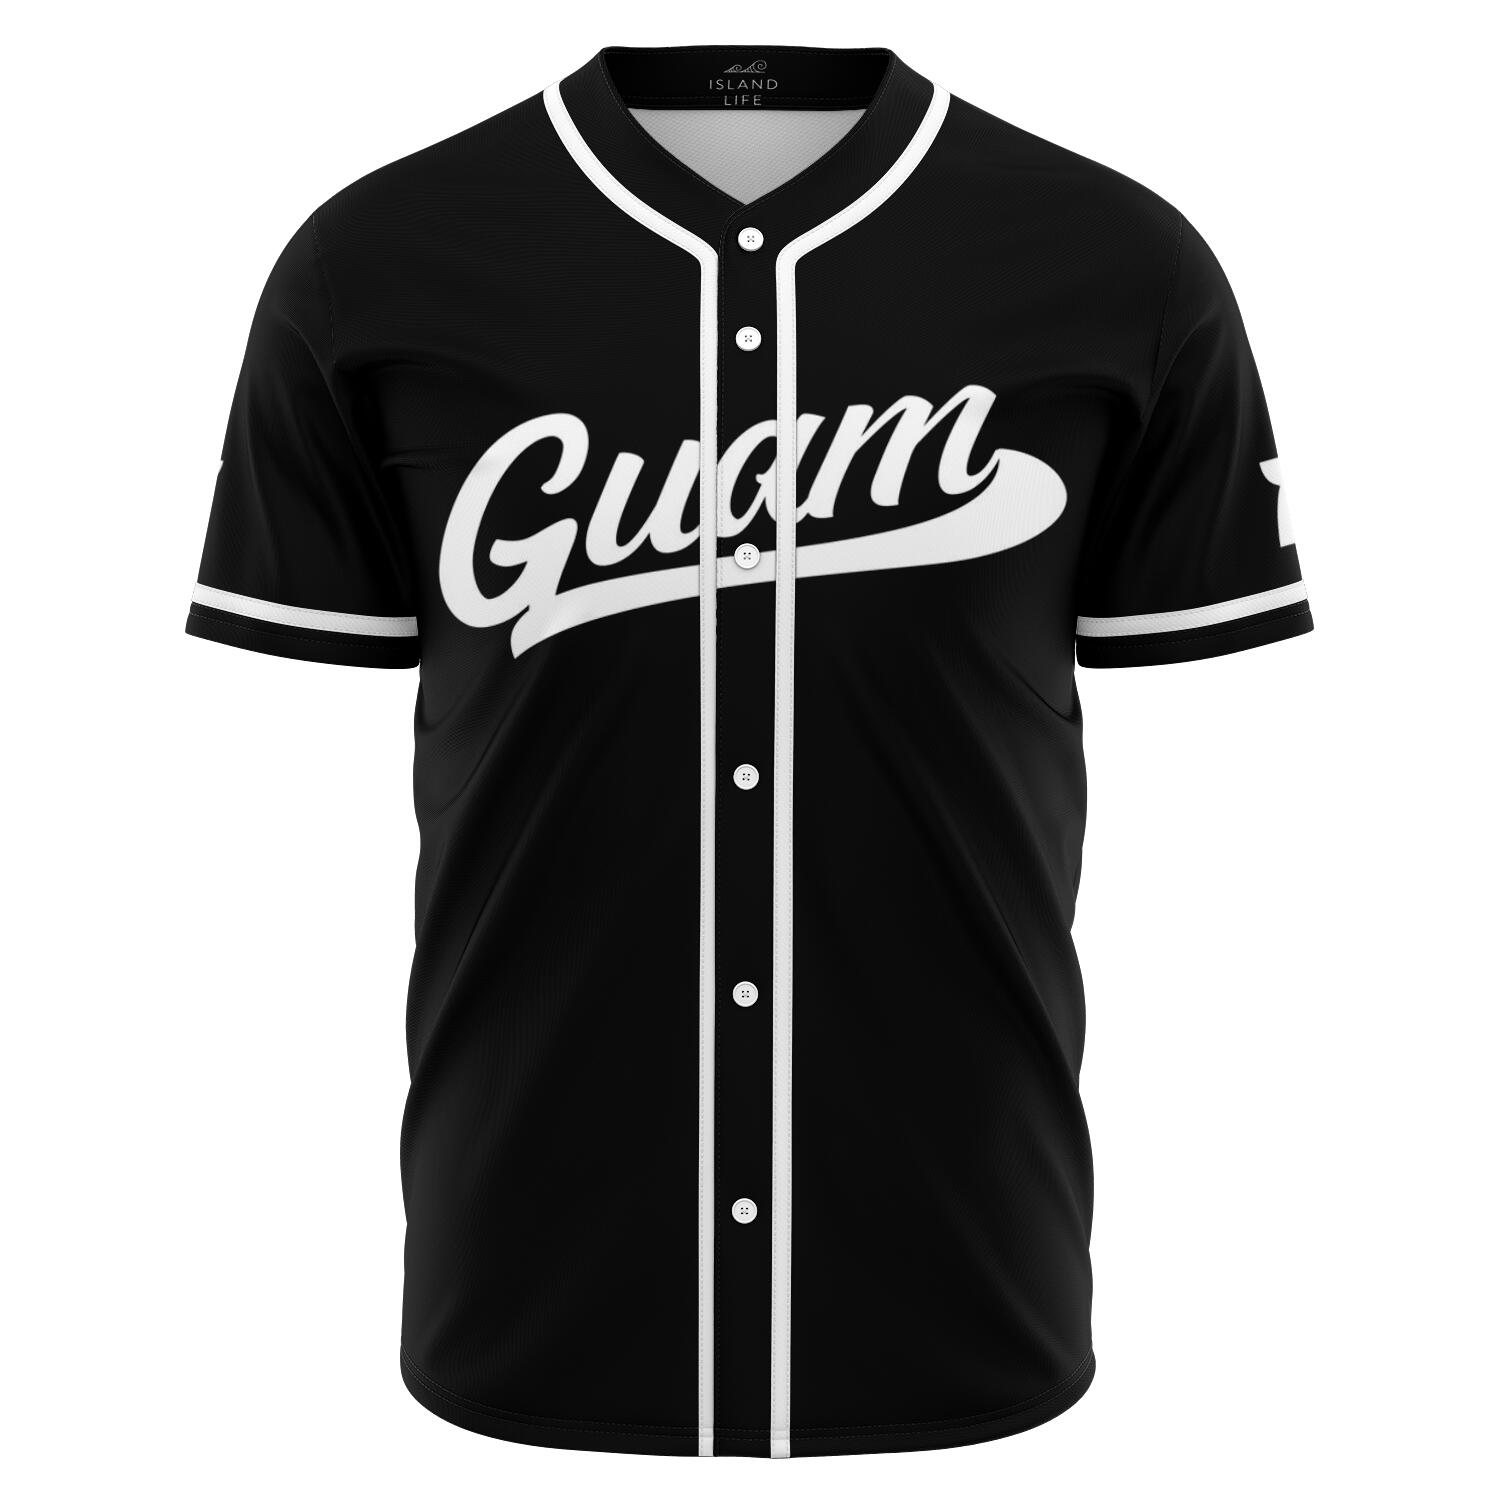 Guam Black Baseball Jersey